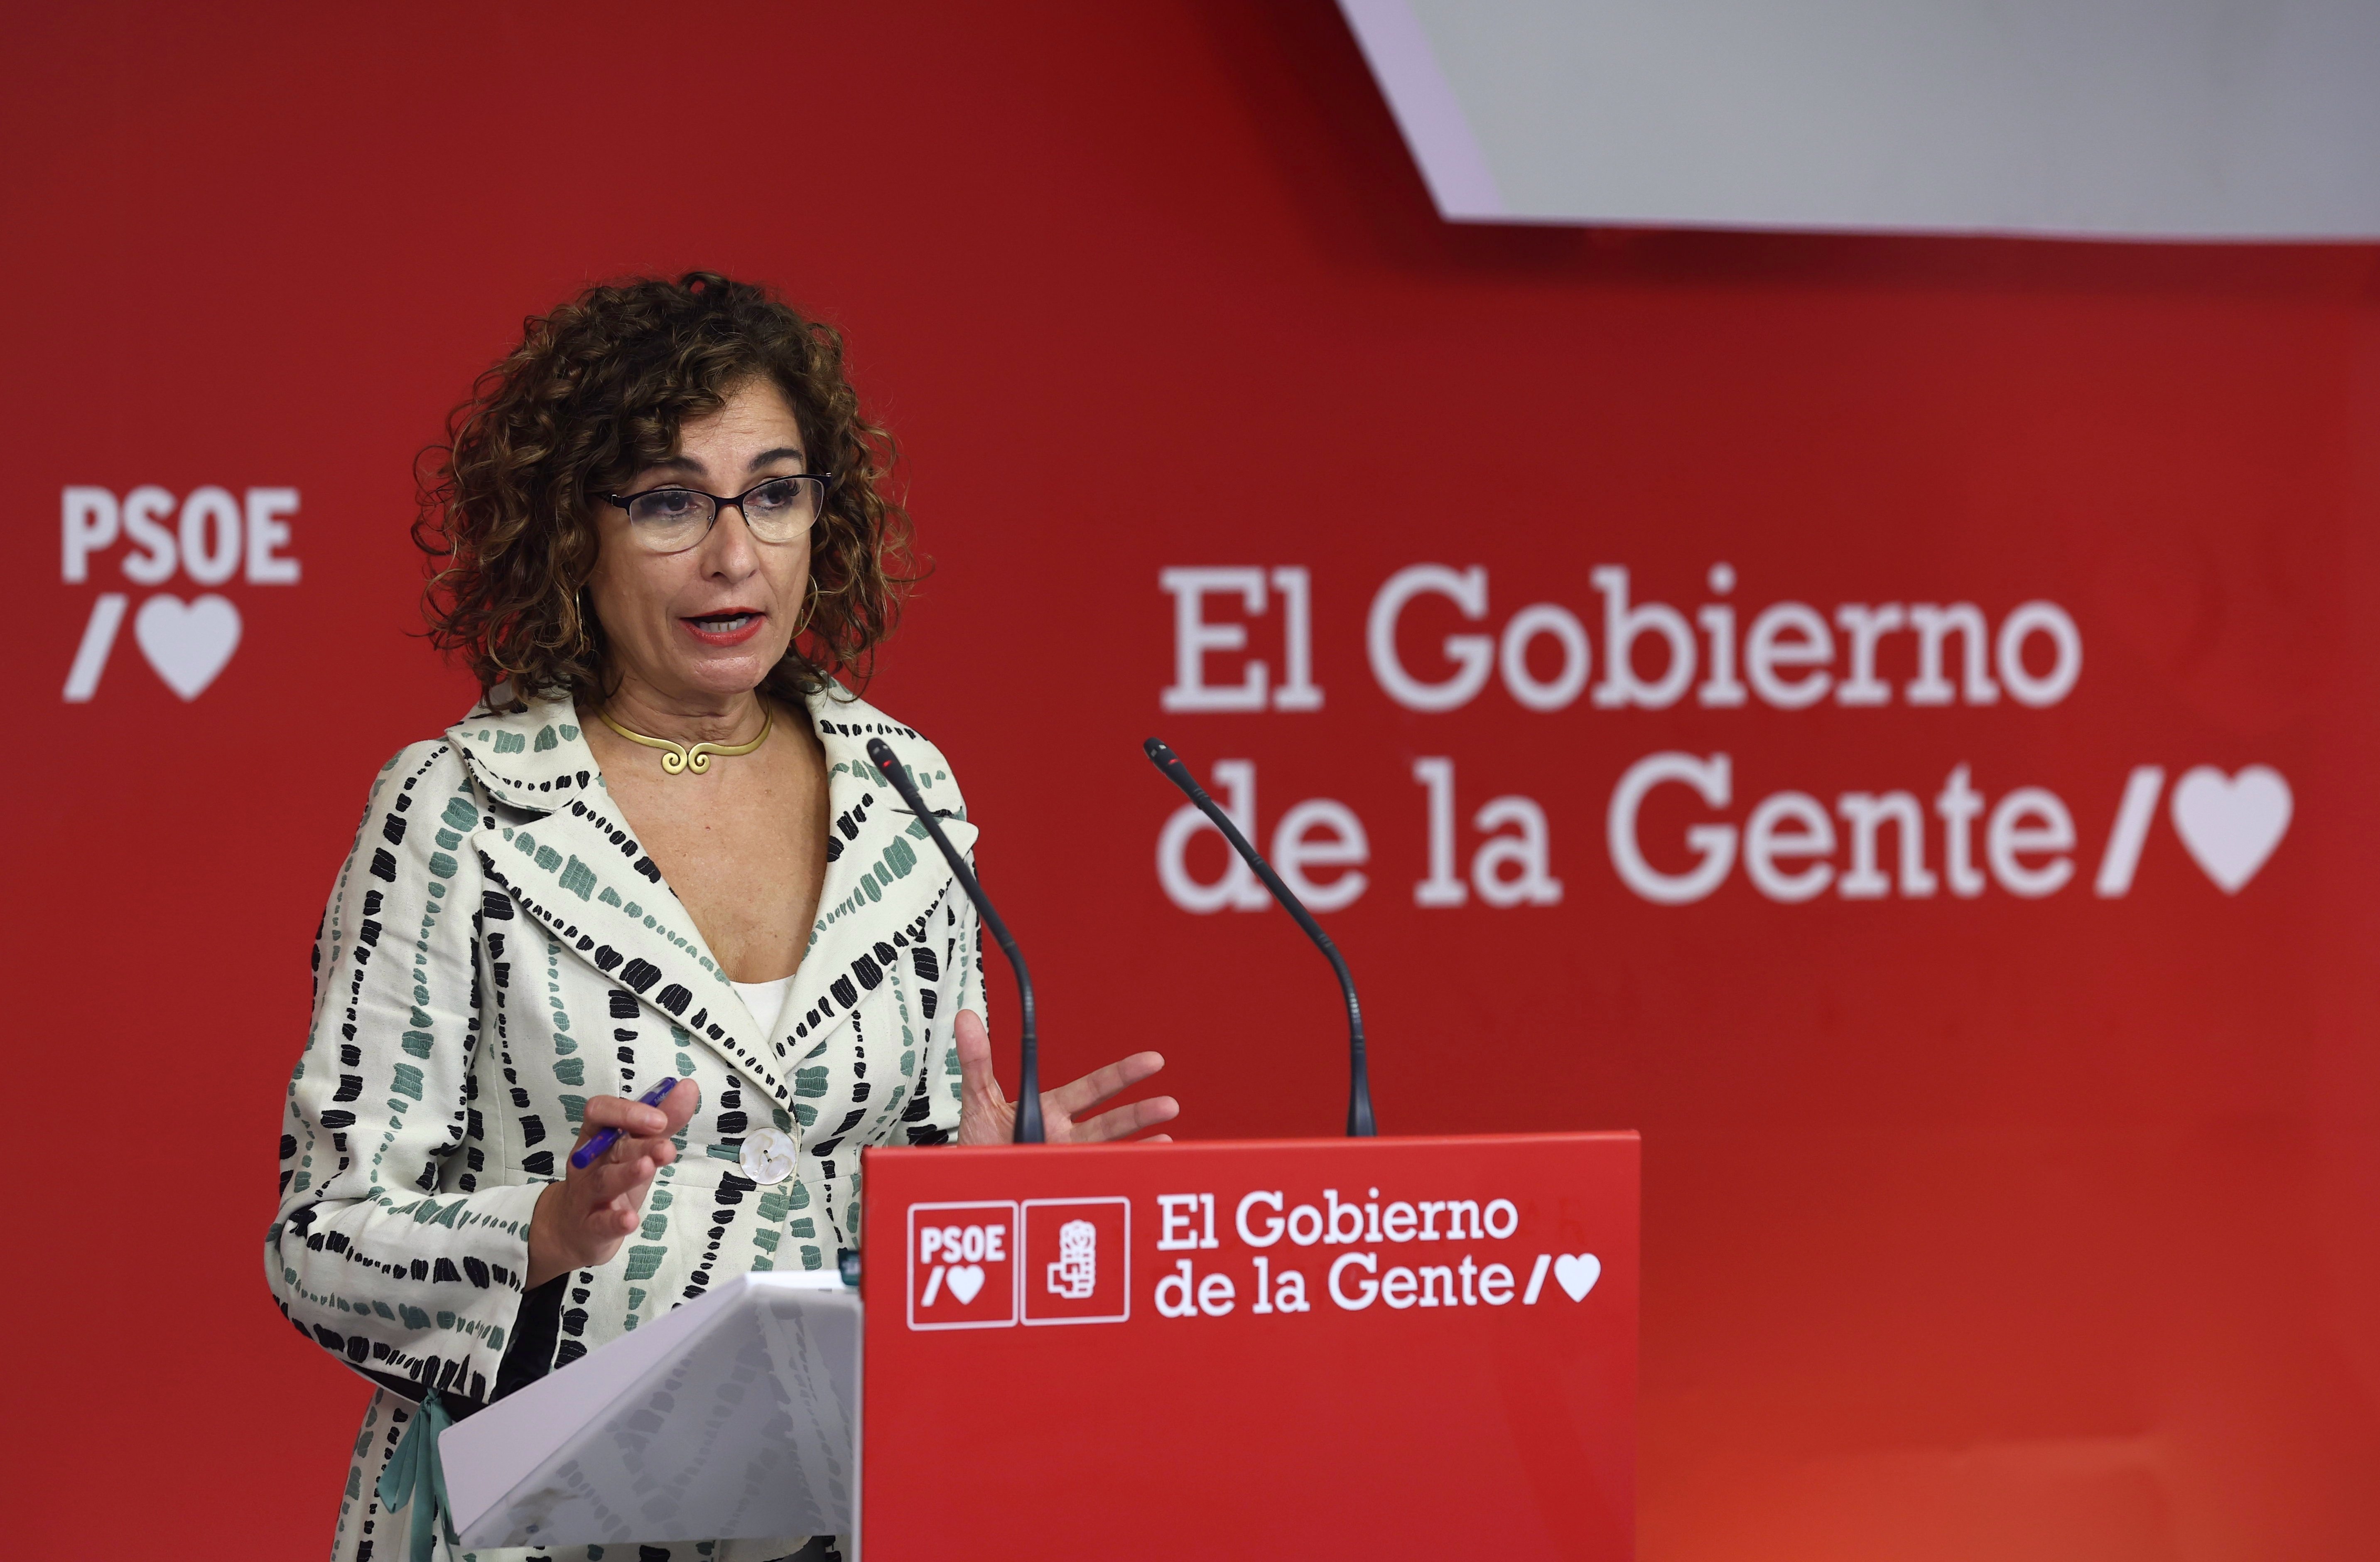 Sánchez enllesteix una pujada d'impostos davant el "populisme fiscal" de Núñez Feijóo